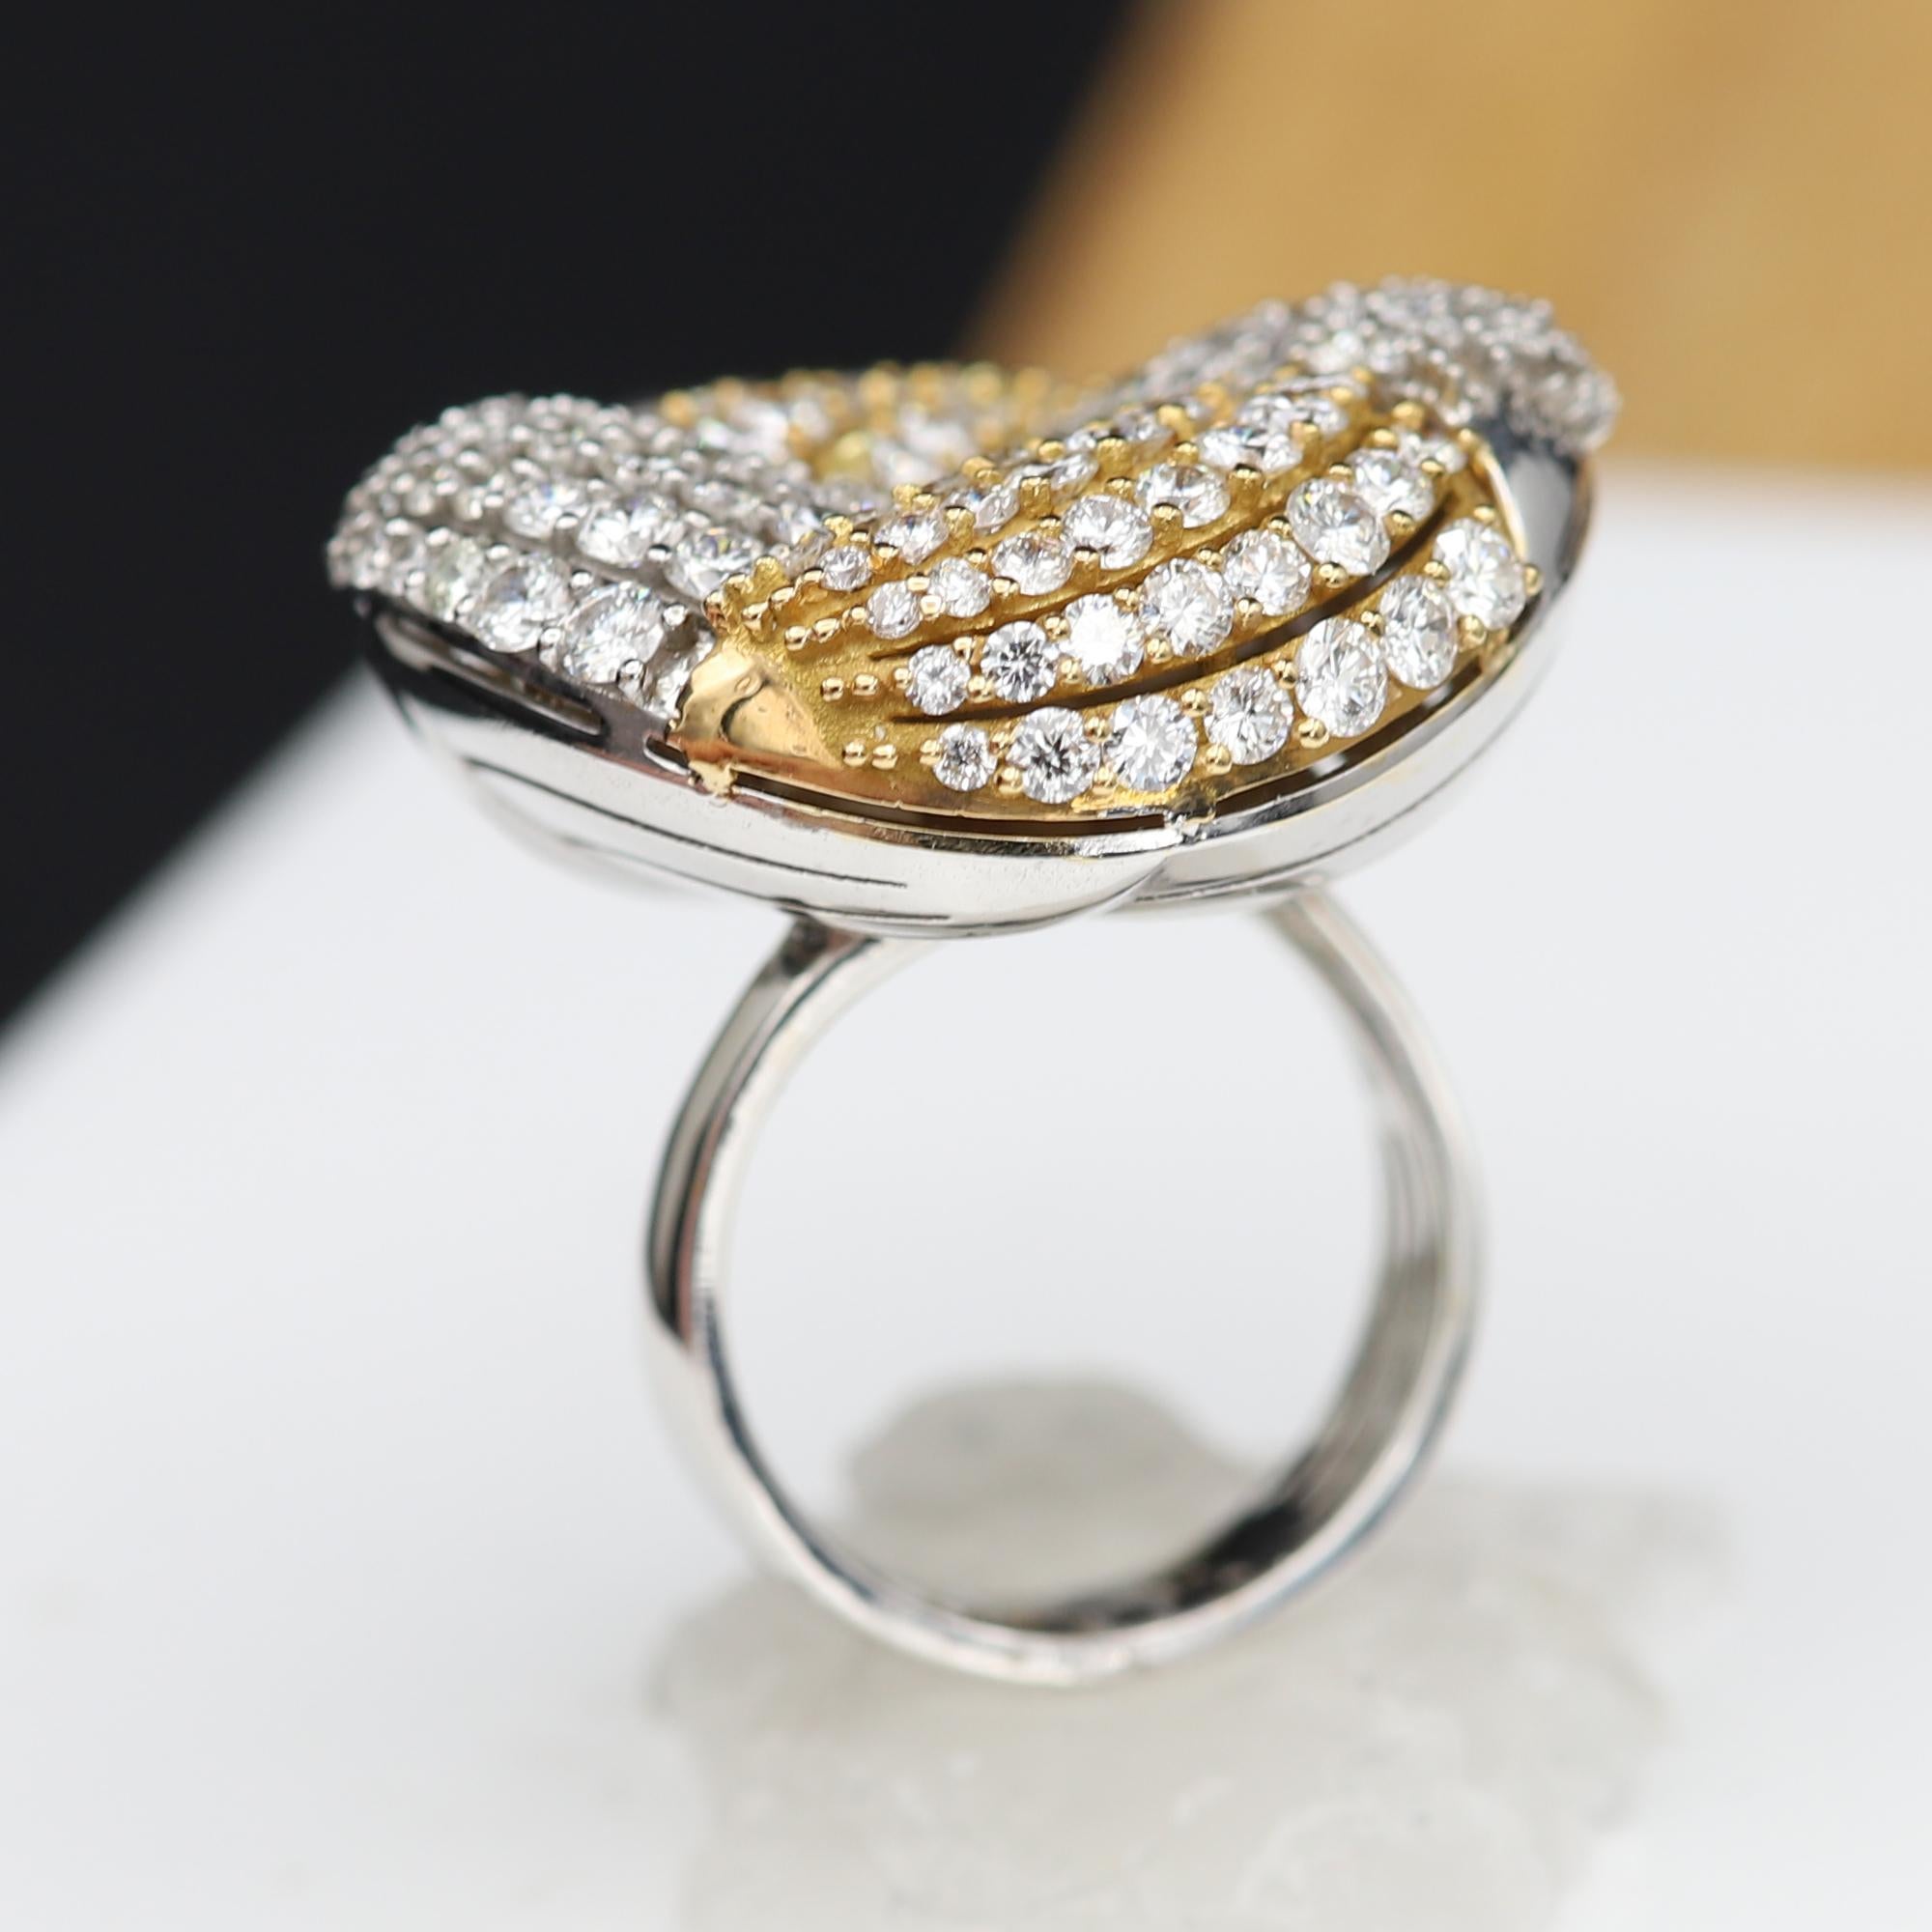 Large Cocktail Diamond Ring 18 Karat Gold Two-Tone Big Diamond Ring 3